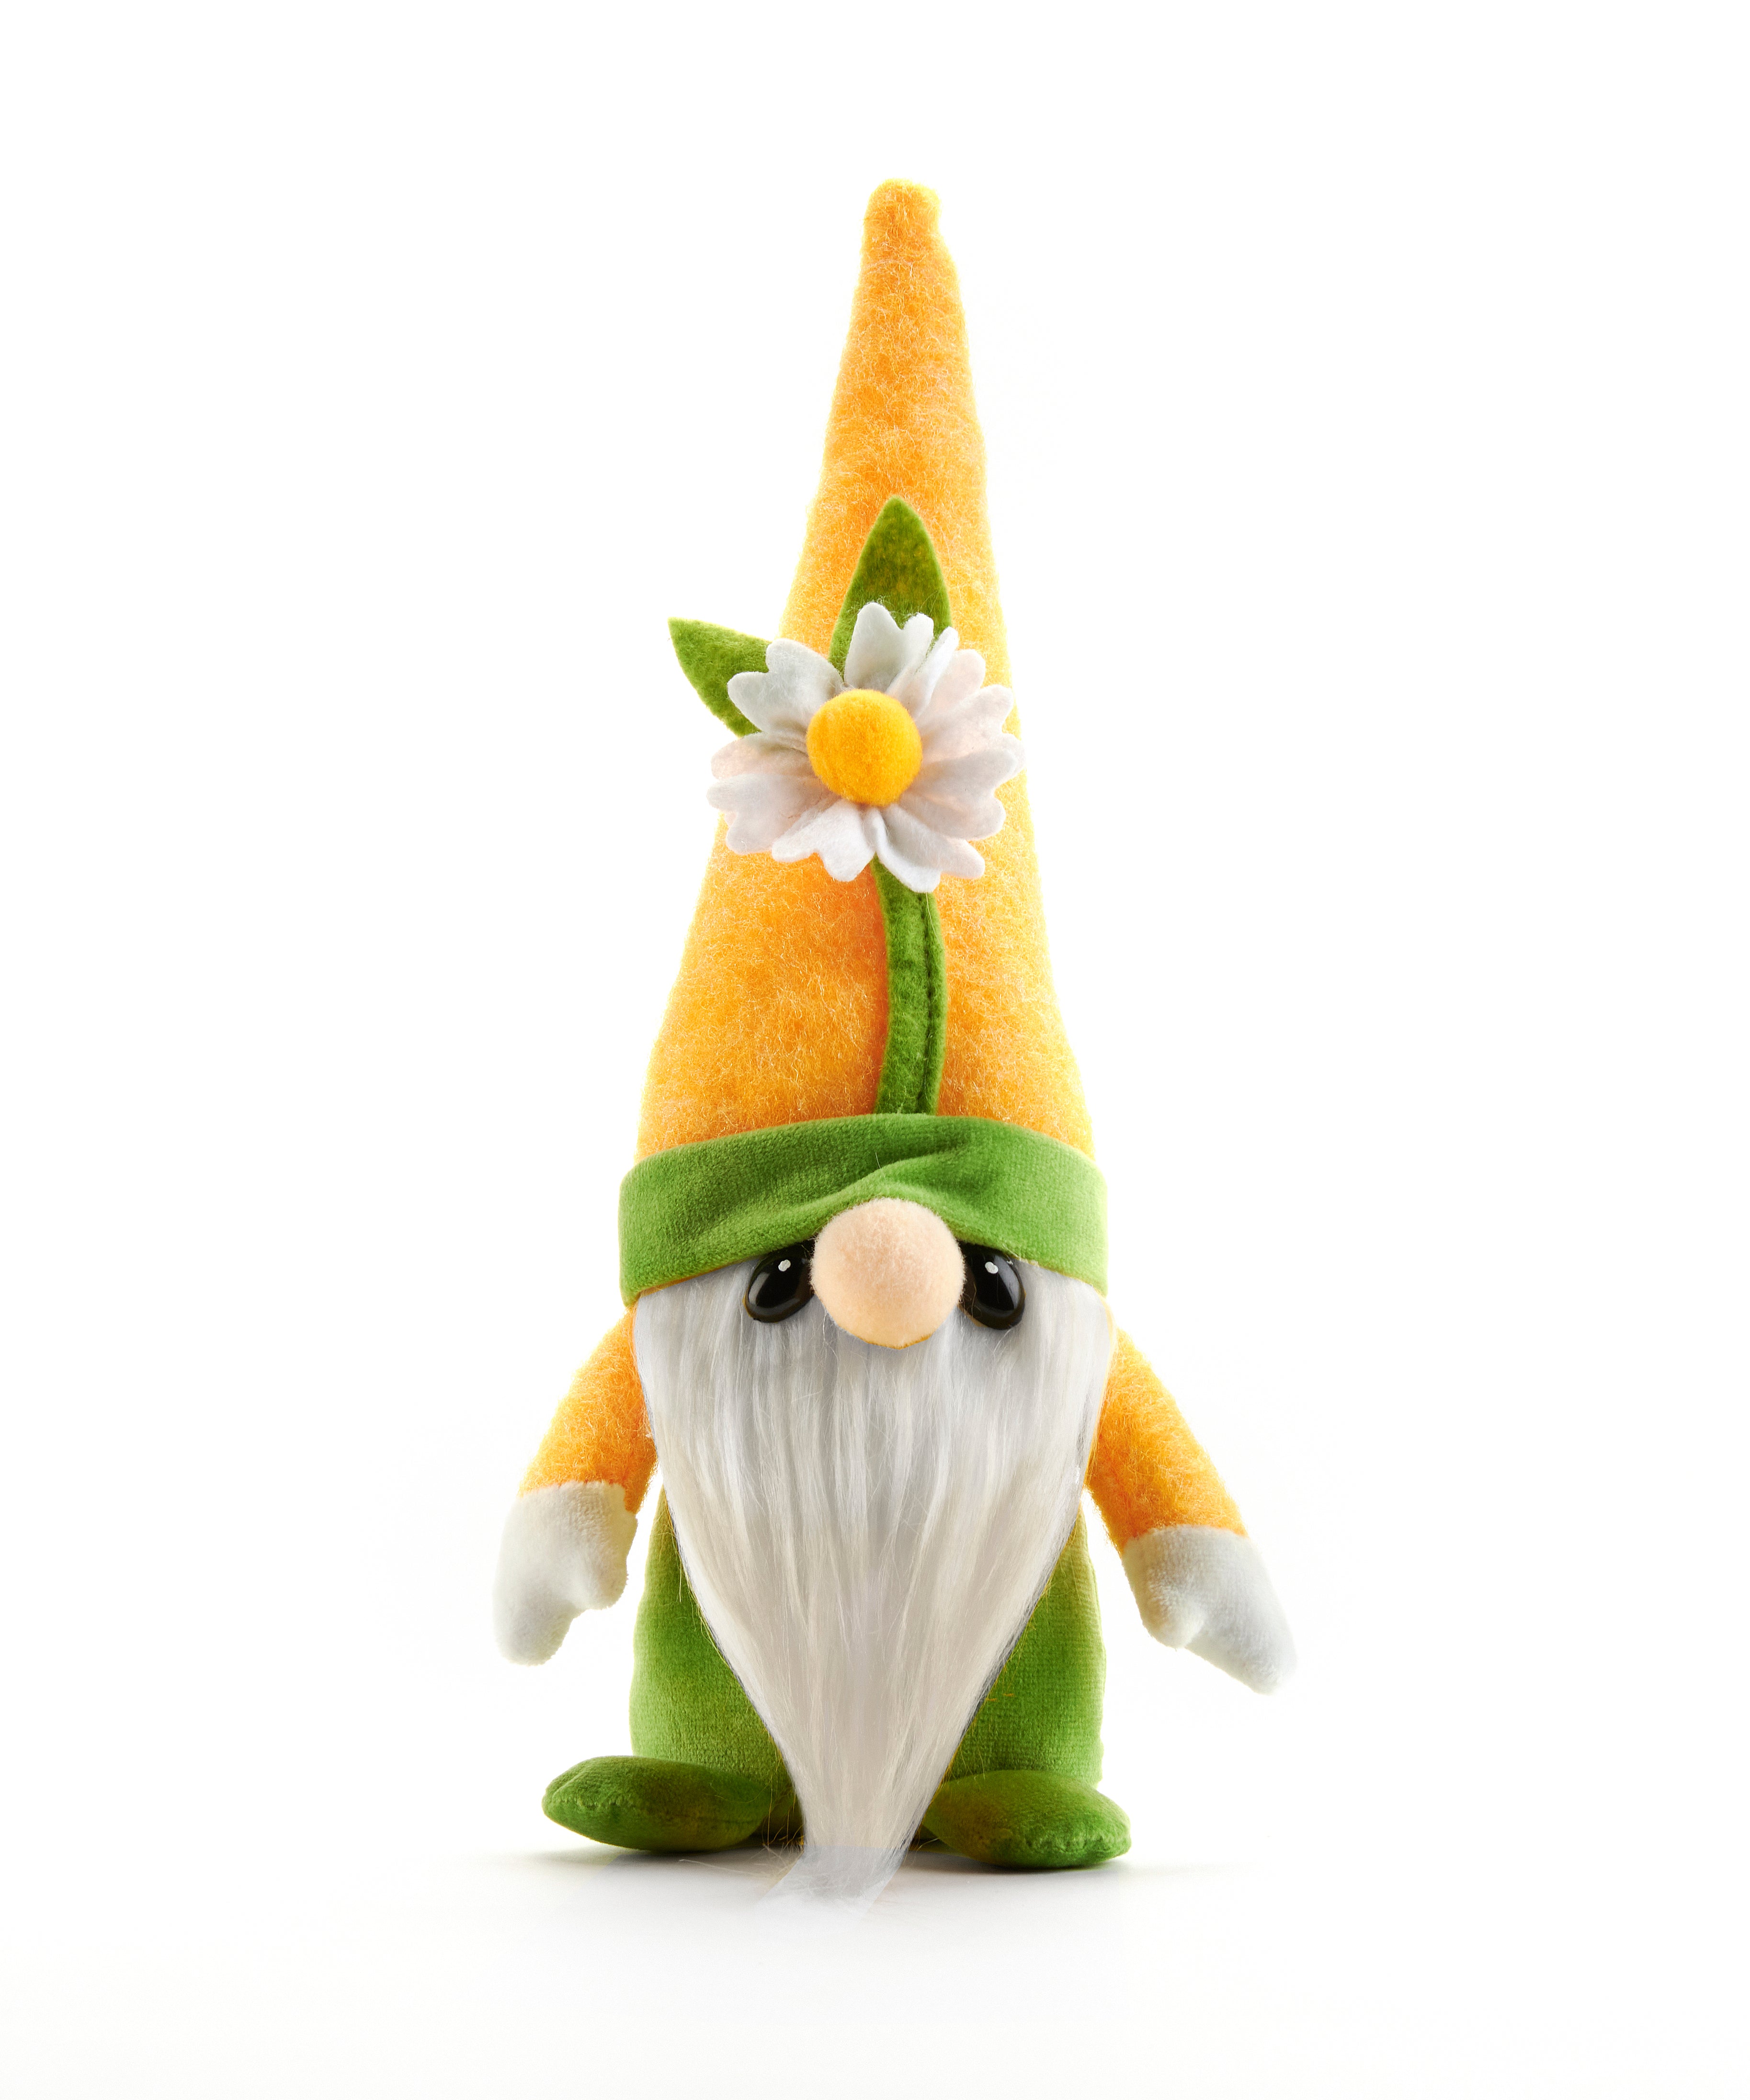 Hug Feel the Love - Flower Gnome - Daisy-hotRAGS.com